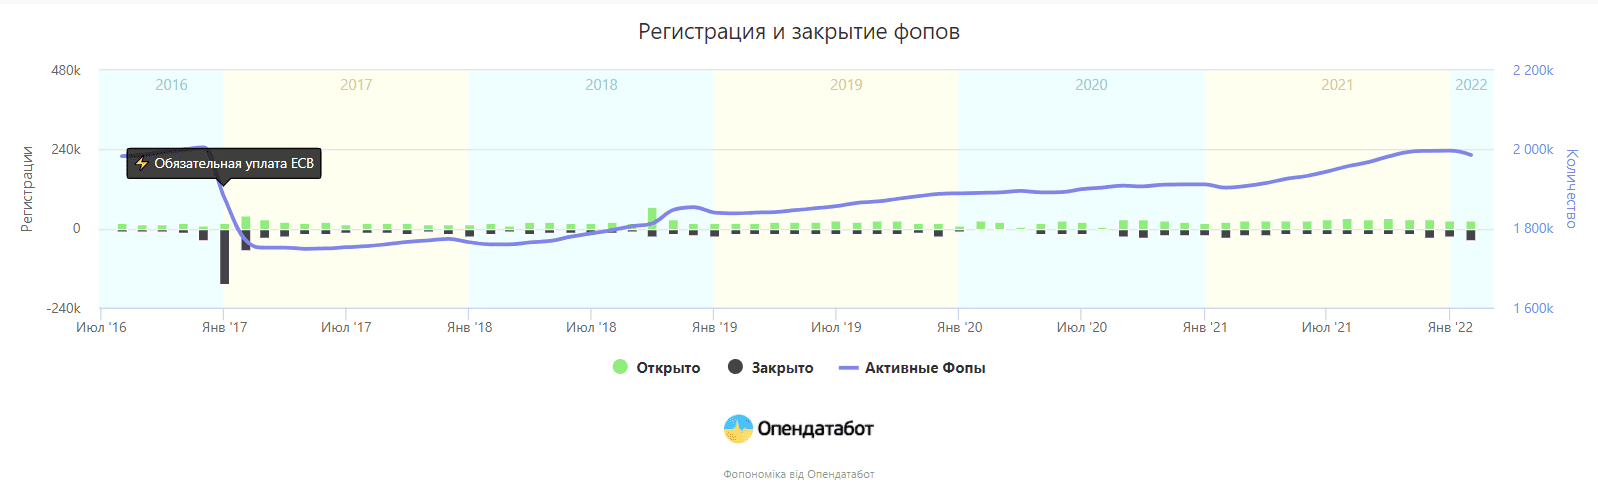 В Україні вперше з 2017 року закрилося більше ФОПів, аніж відкрилося. В чому причина